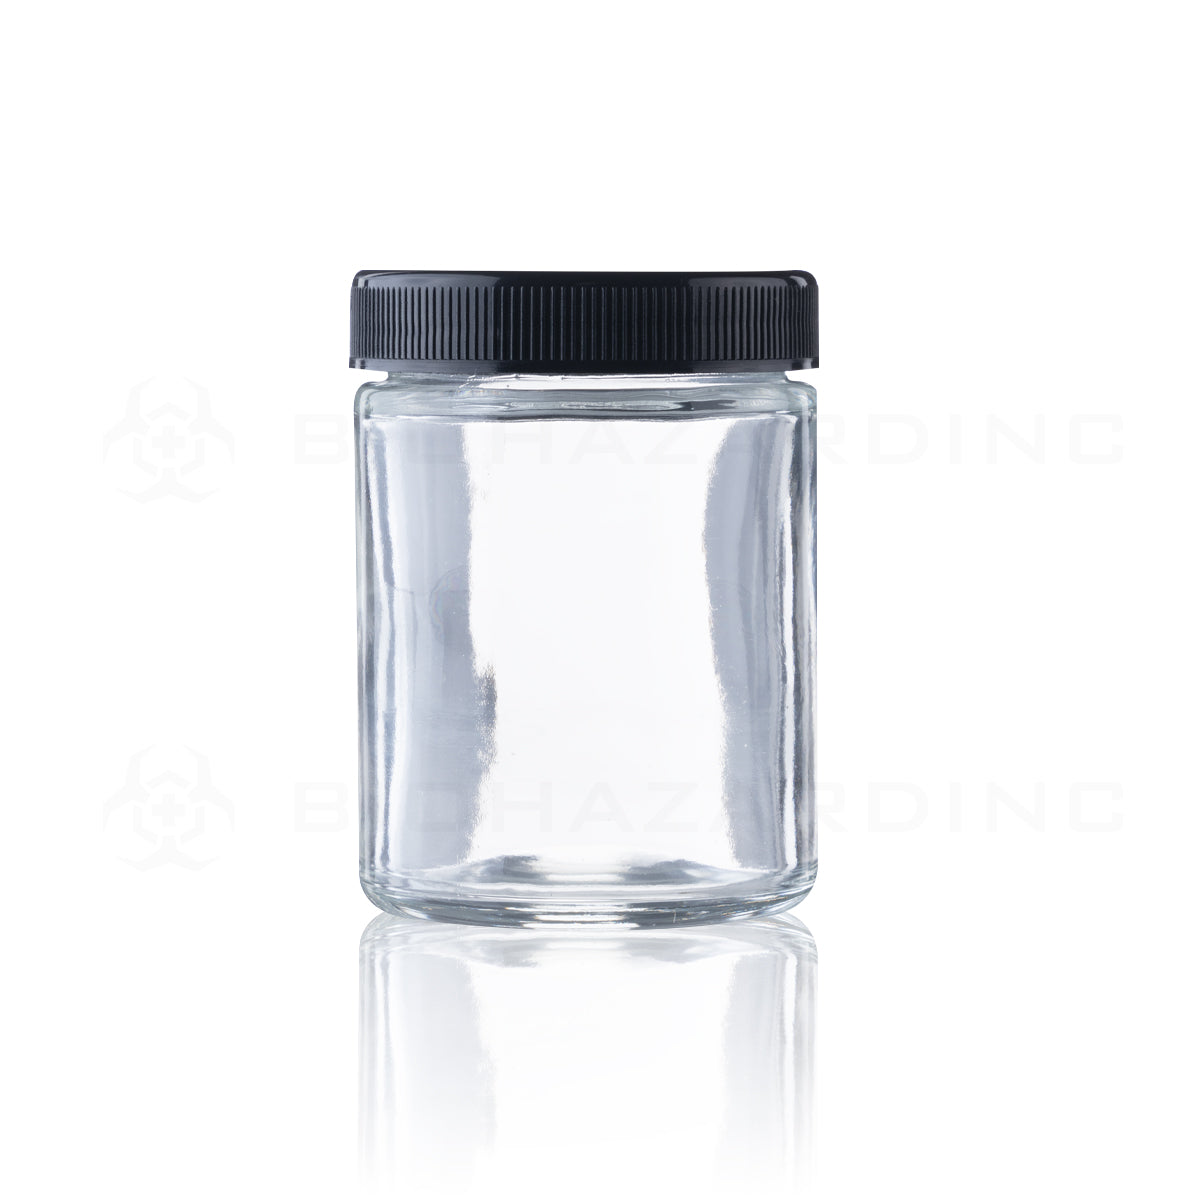 Glass Jar | Straight Sided Clear Glass Jars w/ Black Caps | 4oz - 120 Count Glass Jar Biohazard Inc   